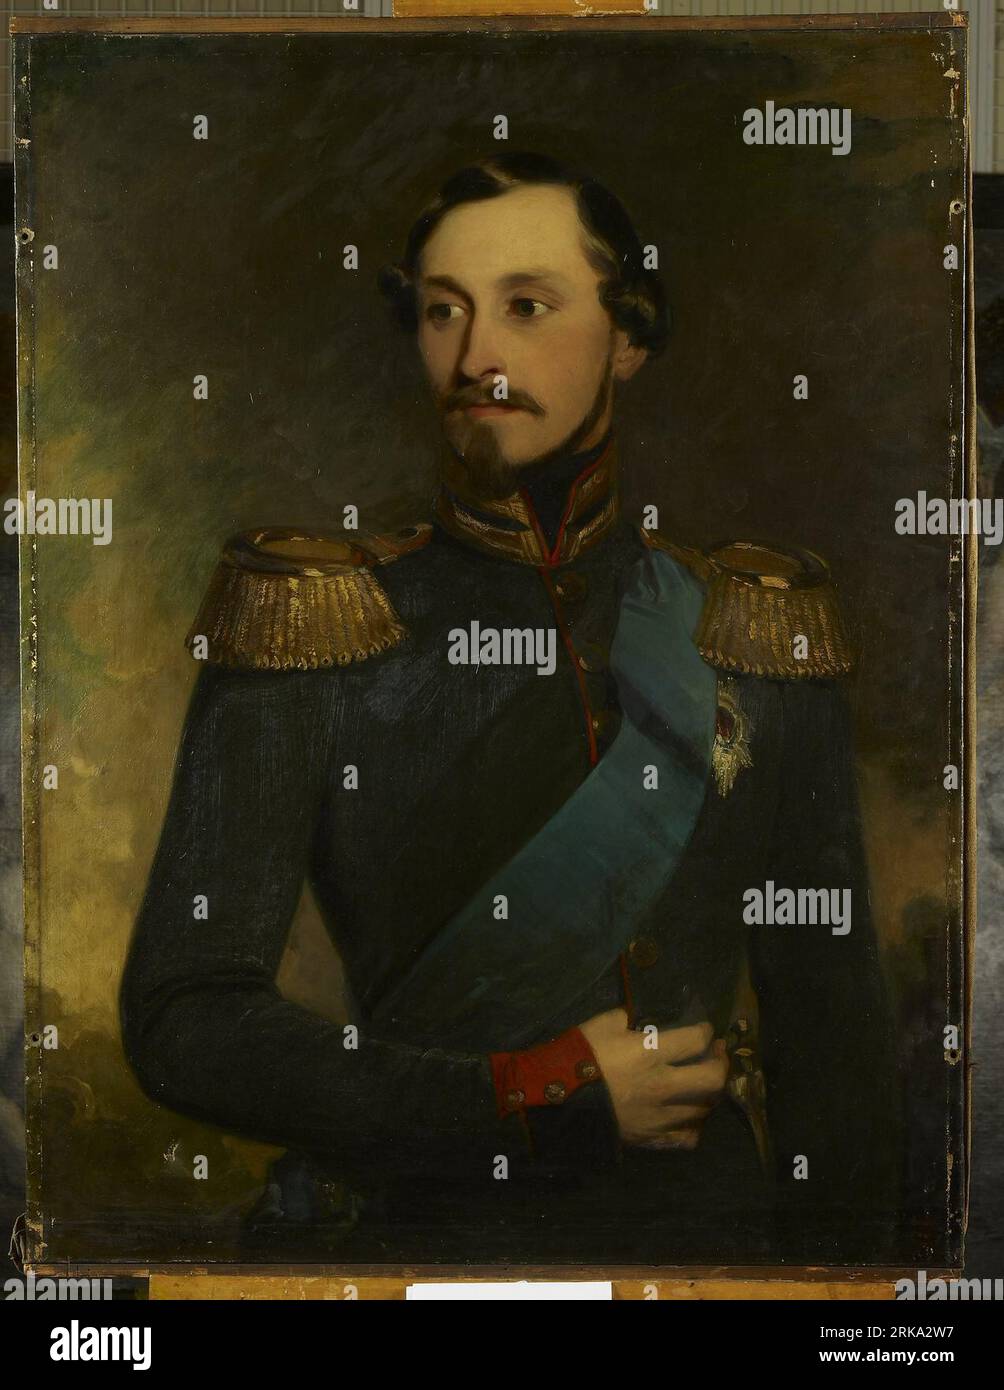 Ernest II (1818-93), Duke of Saxe-Coburg-Gotha by Frederick Richard Say Stock Photo